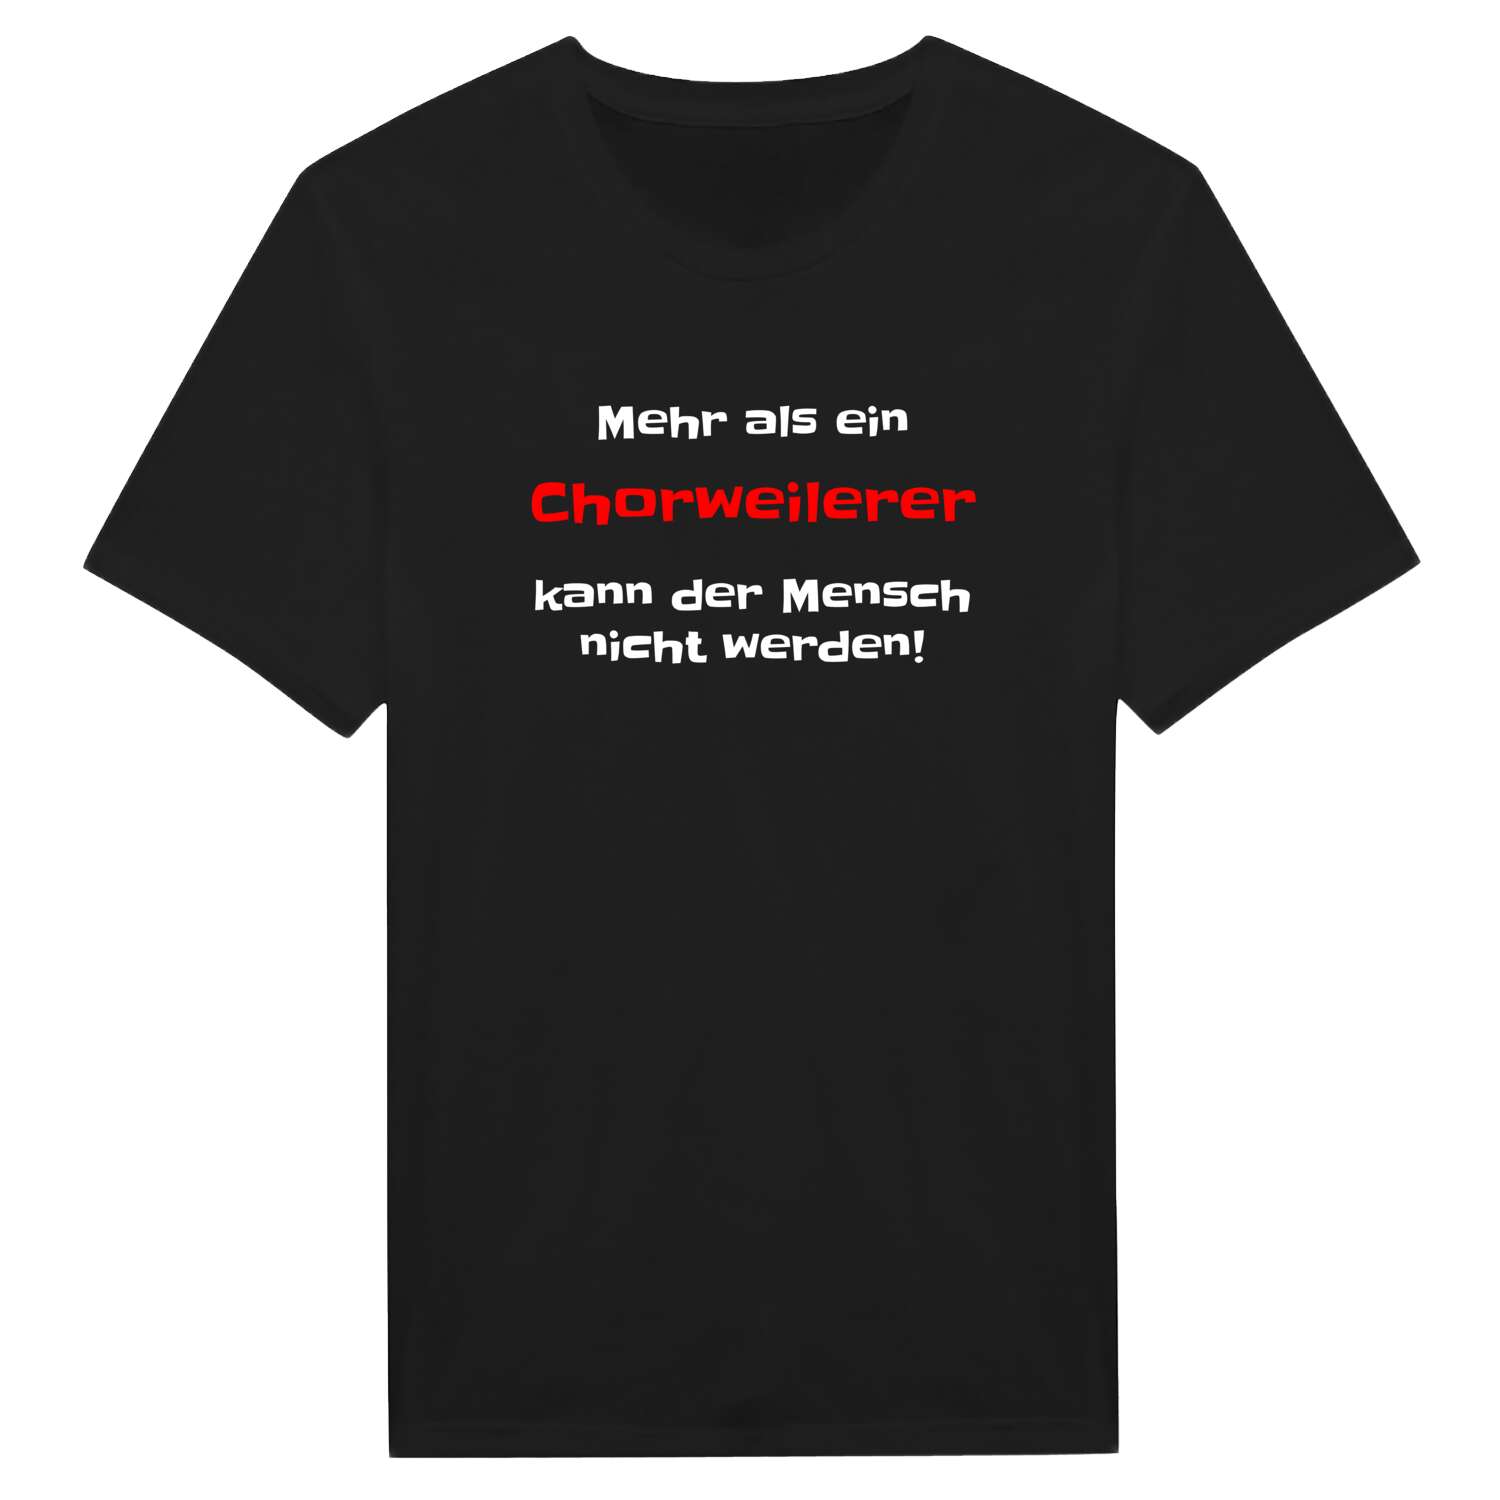 Chorweiler T-Shirt »Mehr als ein«